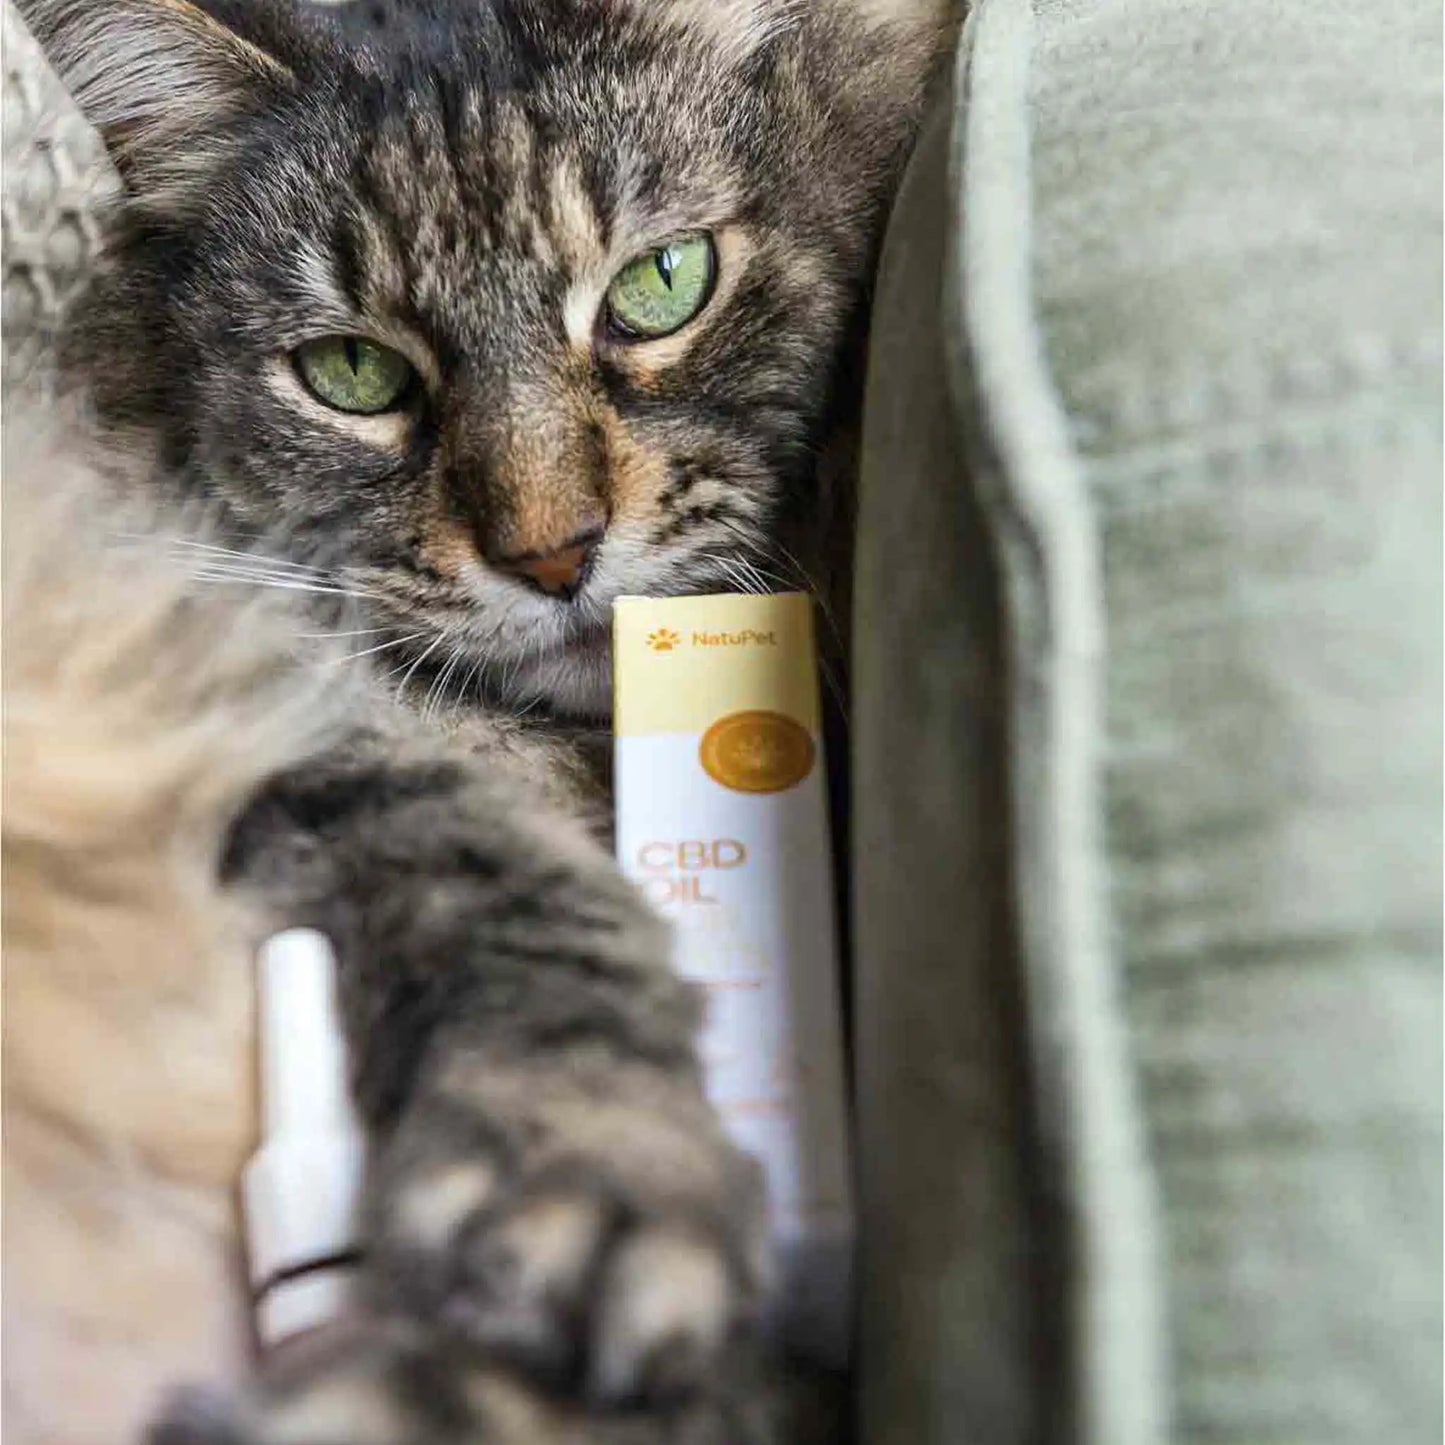 eine braune Katze liegt auf einem Sofa während diese das Produkt auf sich liegen hat